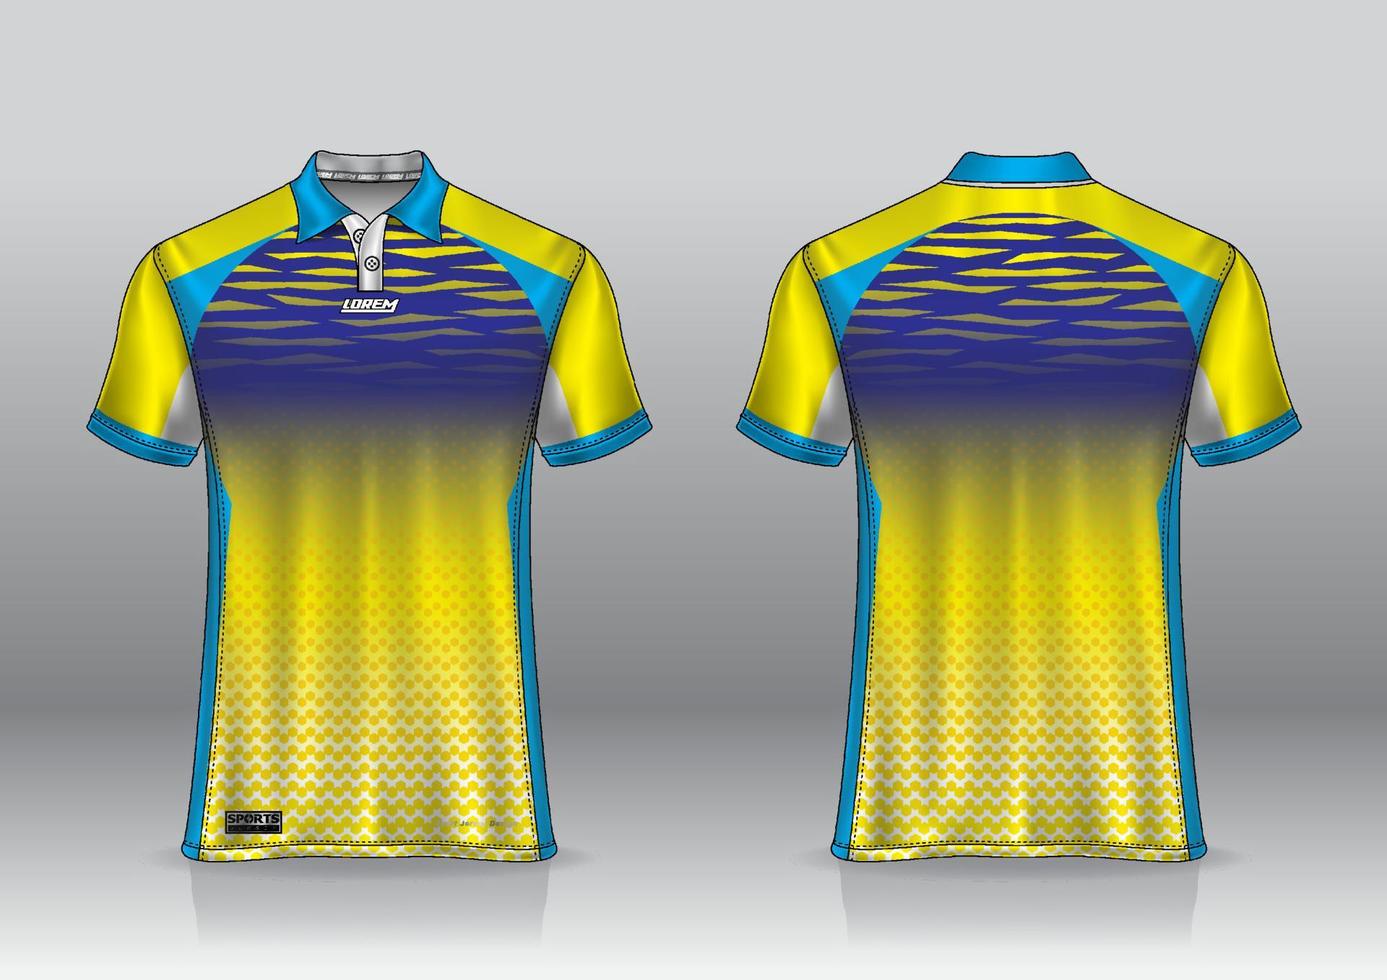 Poloshirt-Jersey-Design für Sport im Freien Vorder- und Rückansicht vektor